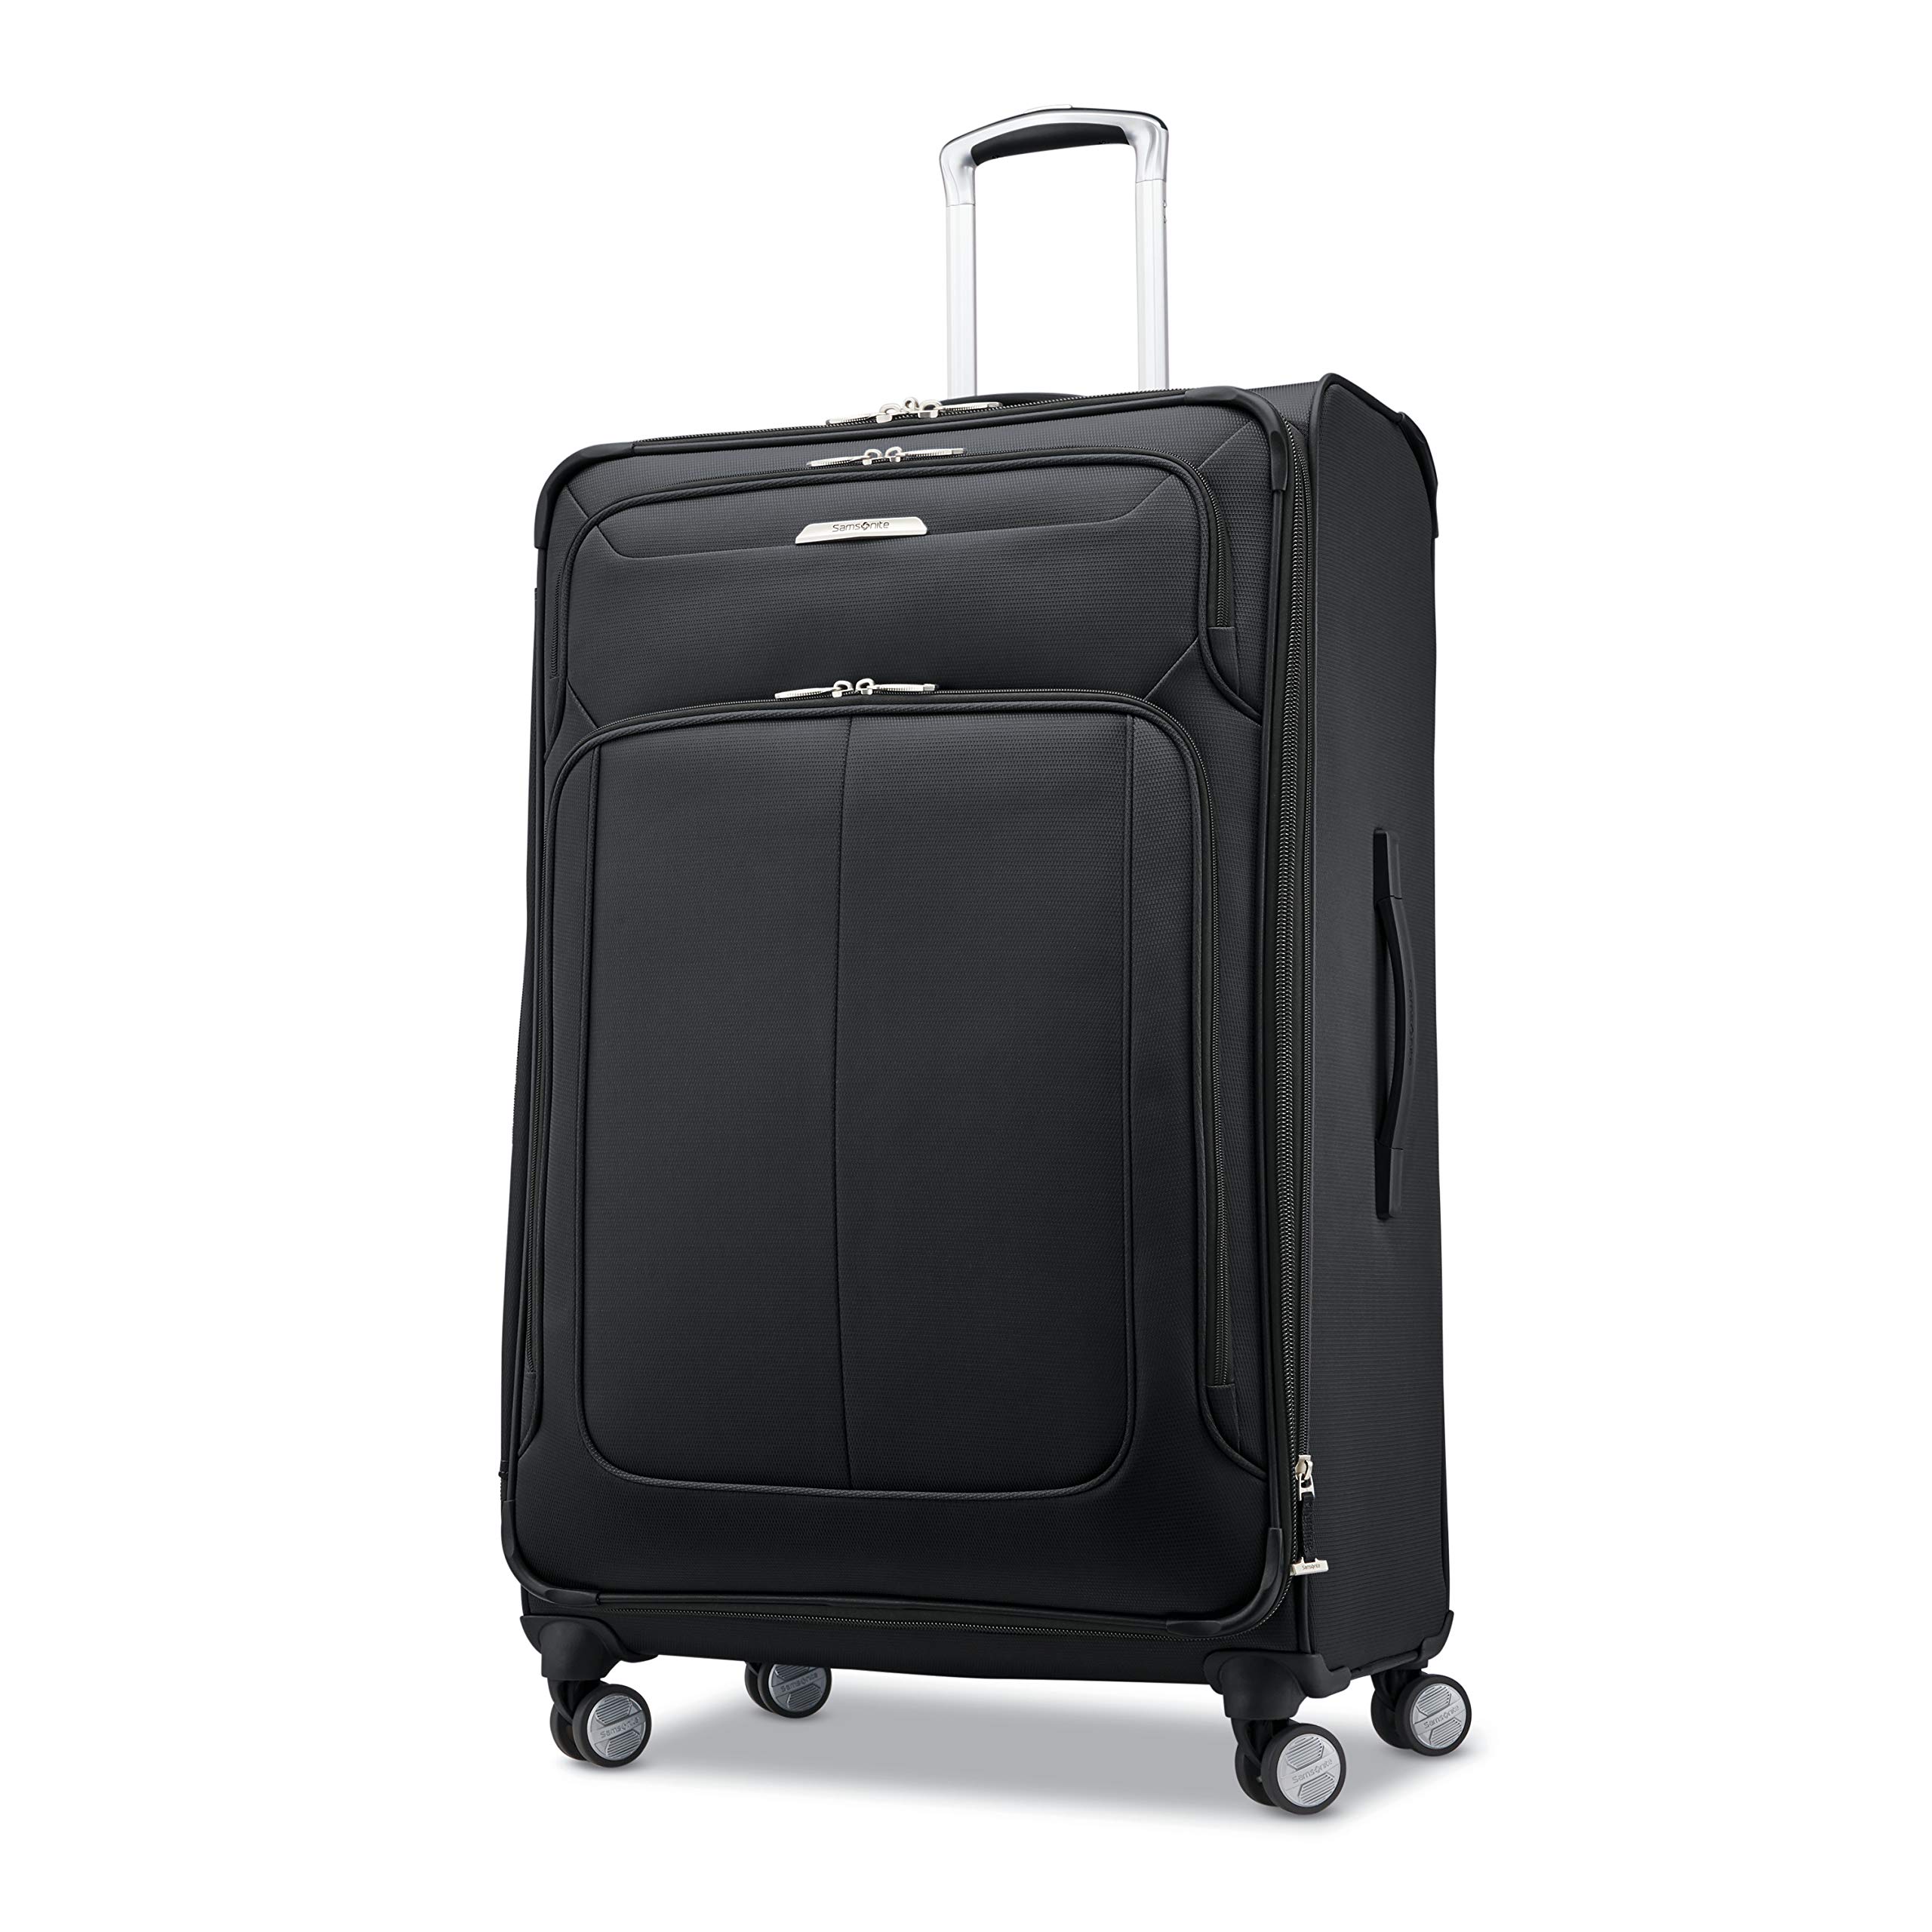 samsonite pro travel softside expandable luggage